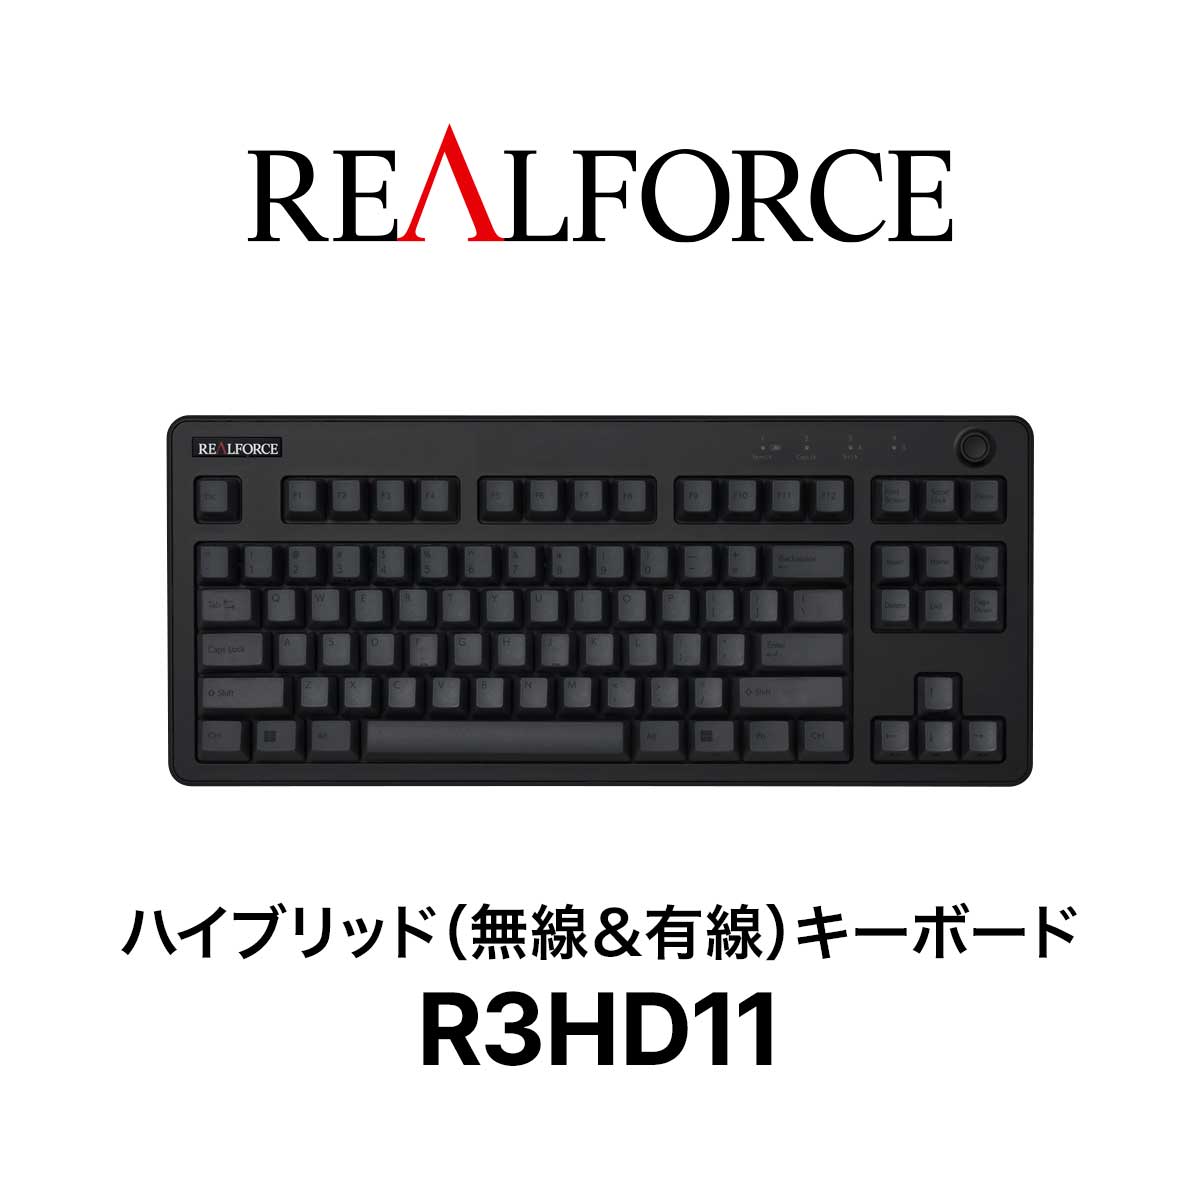 REALFORCE / R3 / キーボード / R3HD11 / ワイヤレス / Bluetooth / USB / 東プレ / ハイブリッドモデル  / テンキーレス / 静音 / ブラック＆ダークグレー / 英語配列 | REALFORCE Store